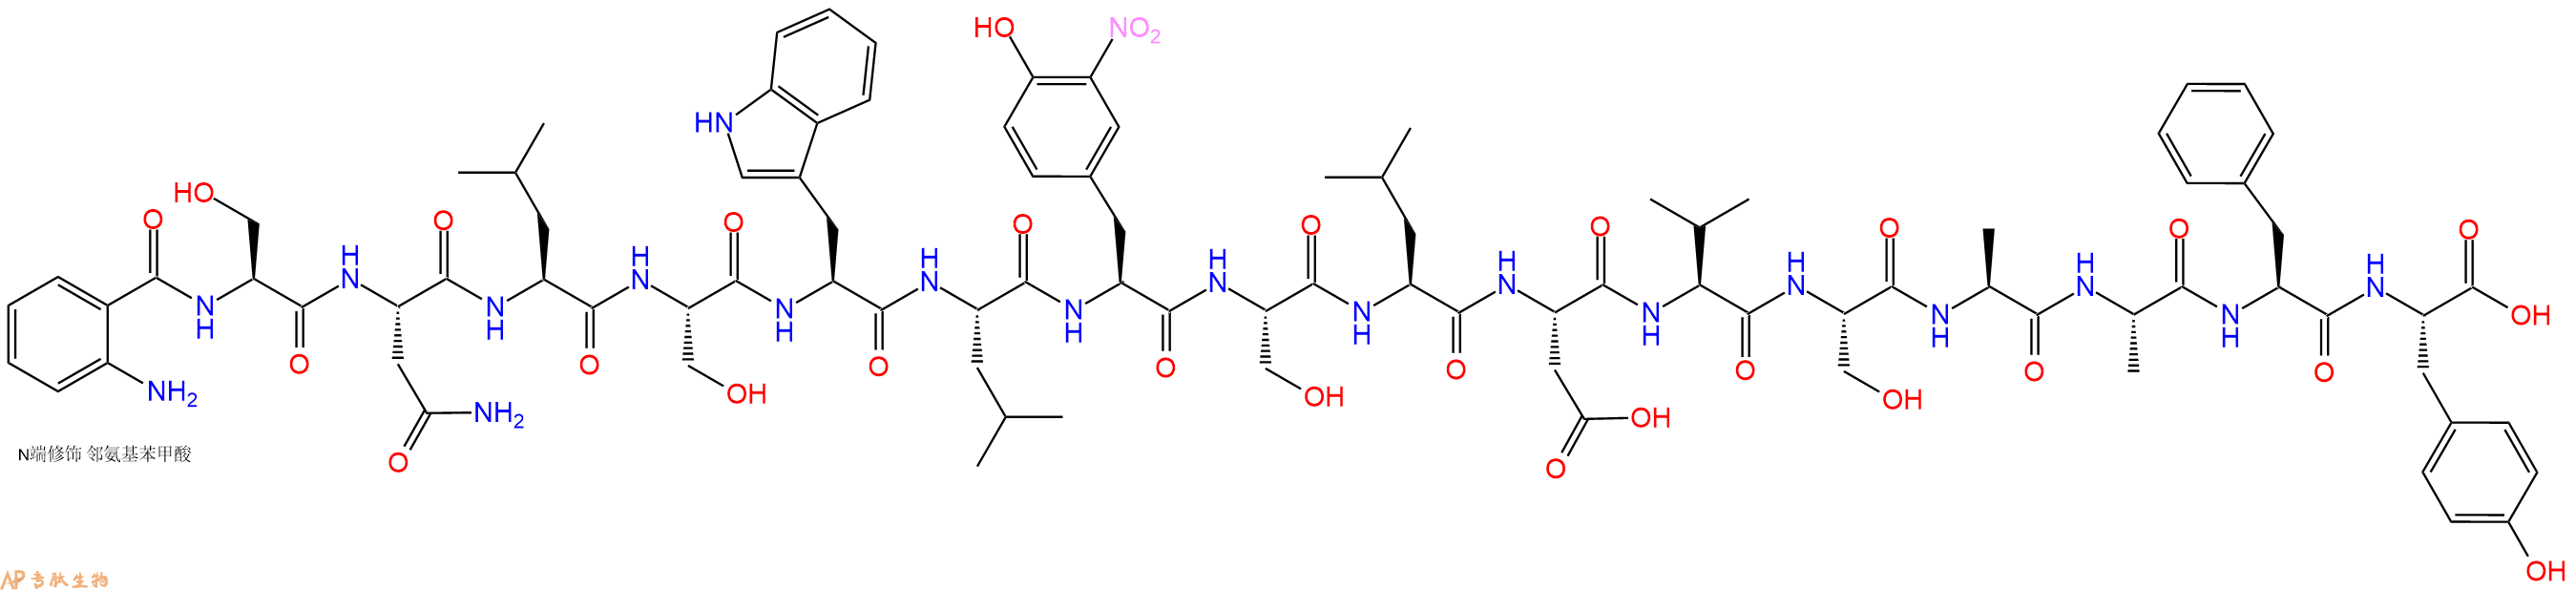 专肽生物产品Abz-Ser-Asn-Leu-Ser-Trp-Leu-Tyr(3NO2)-Ser-Leu-Asp-